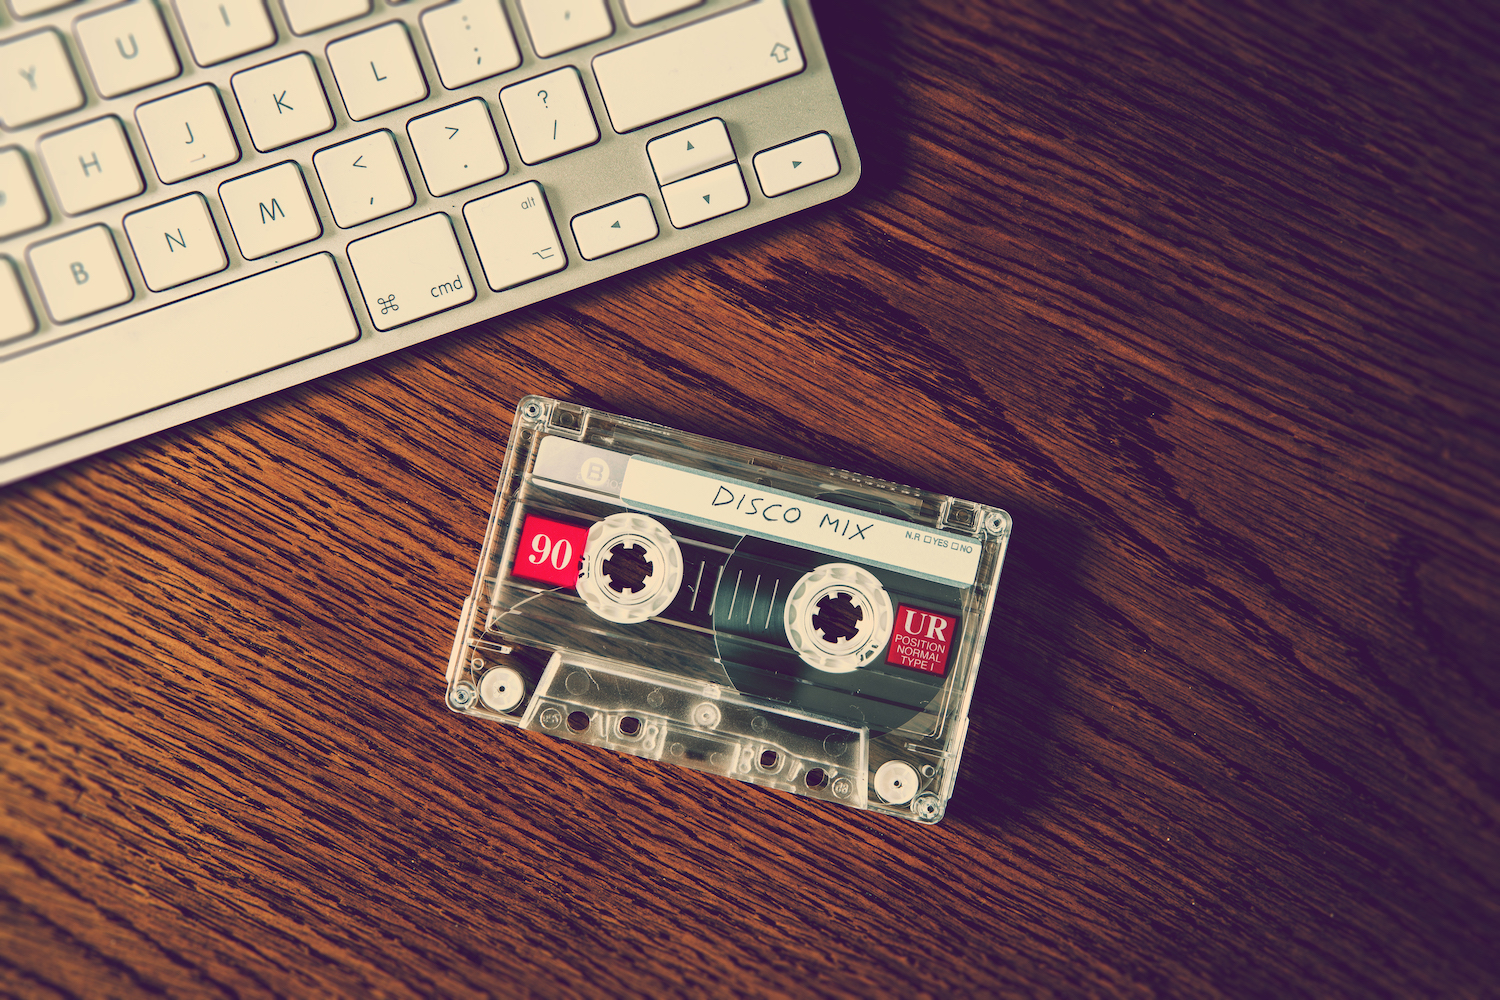 Musik digitalisieren von Kassette – so geht's